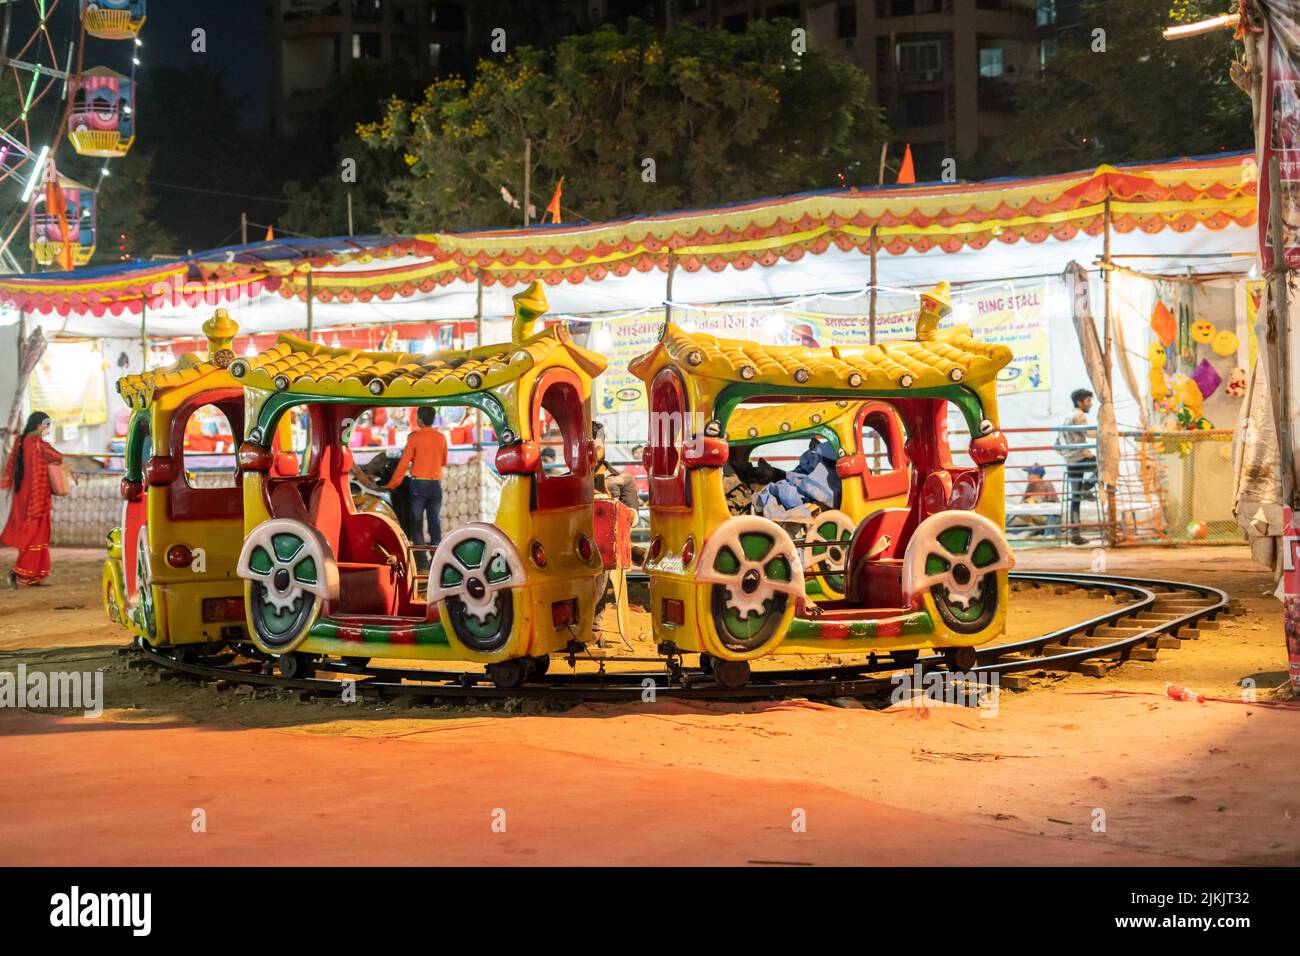 A joy ride kids train in carnival festival in Mumbai Maharashtra Stock Photo